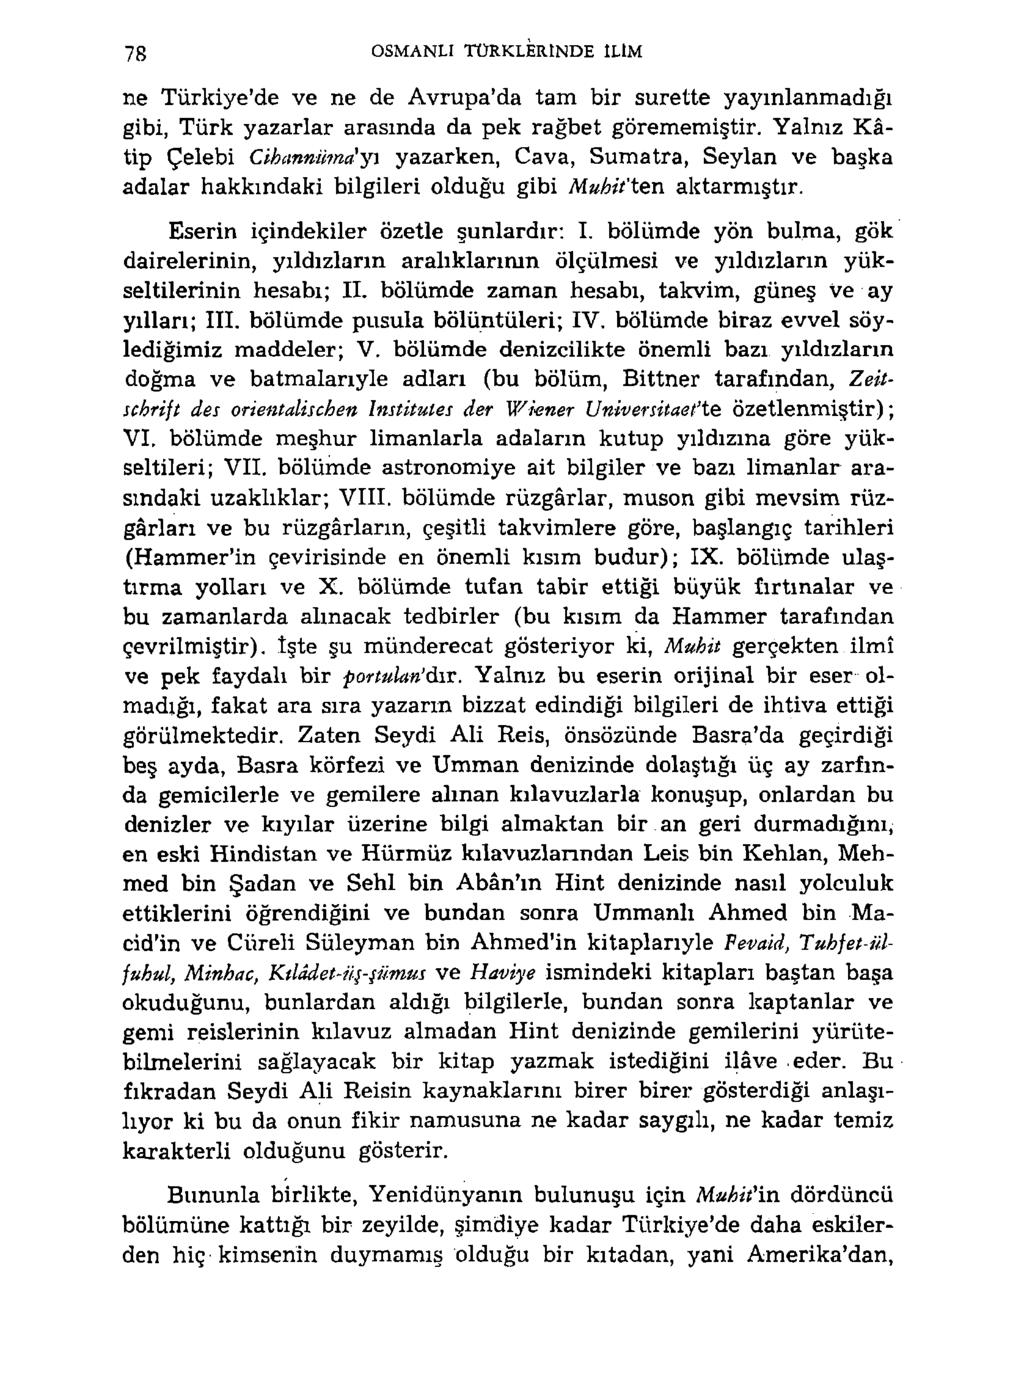 78 OSMANLI TÜRKLERINDE ILIM ne Türkiye'de ve ne de Avrupa'da tam bir surette yayınlanmadığı gibi, Türk yazarlar arasında da pek rağbet görememiştir.